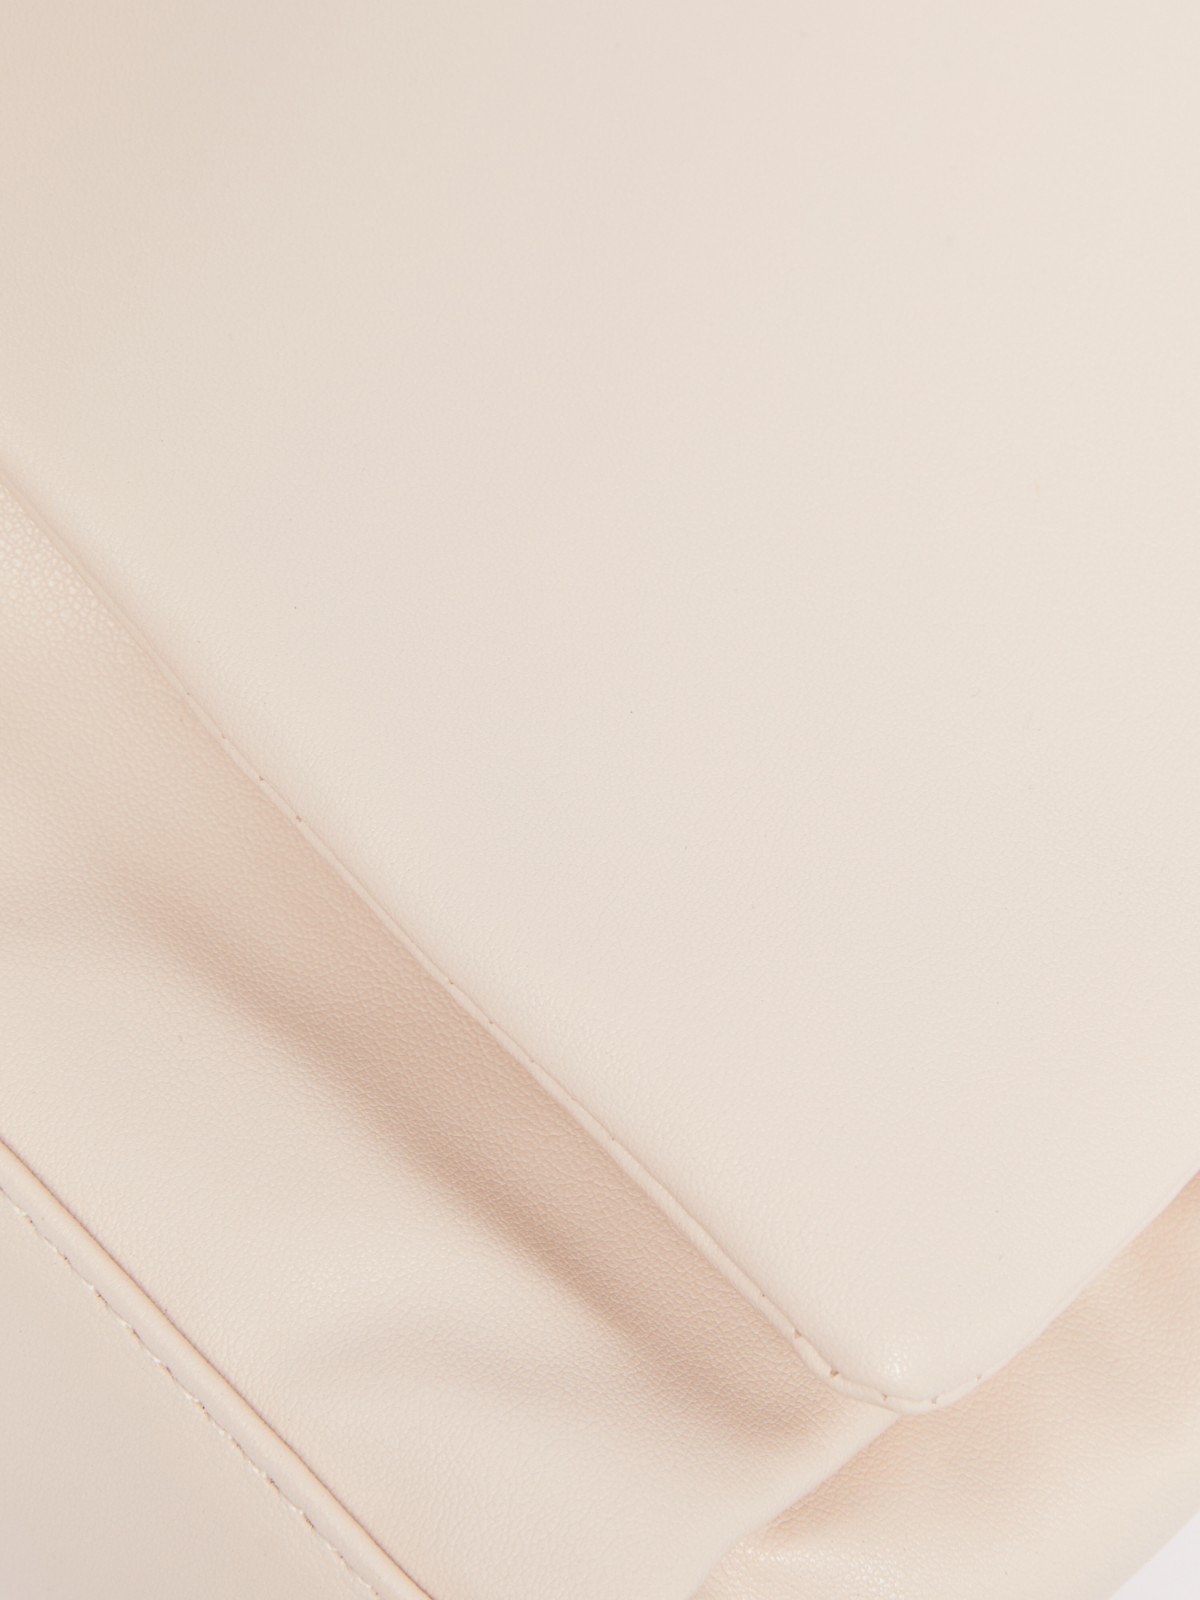 Сумка из экокожи на плечо zolla 224219462095, цвет молоко, размер No_size - фото 3